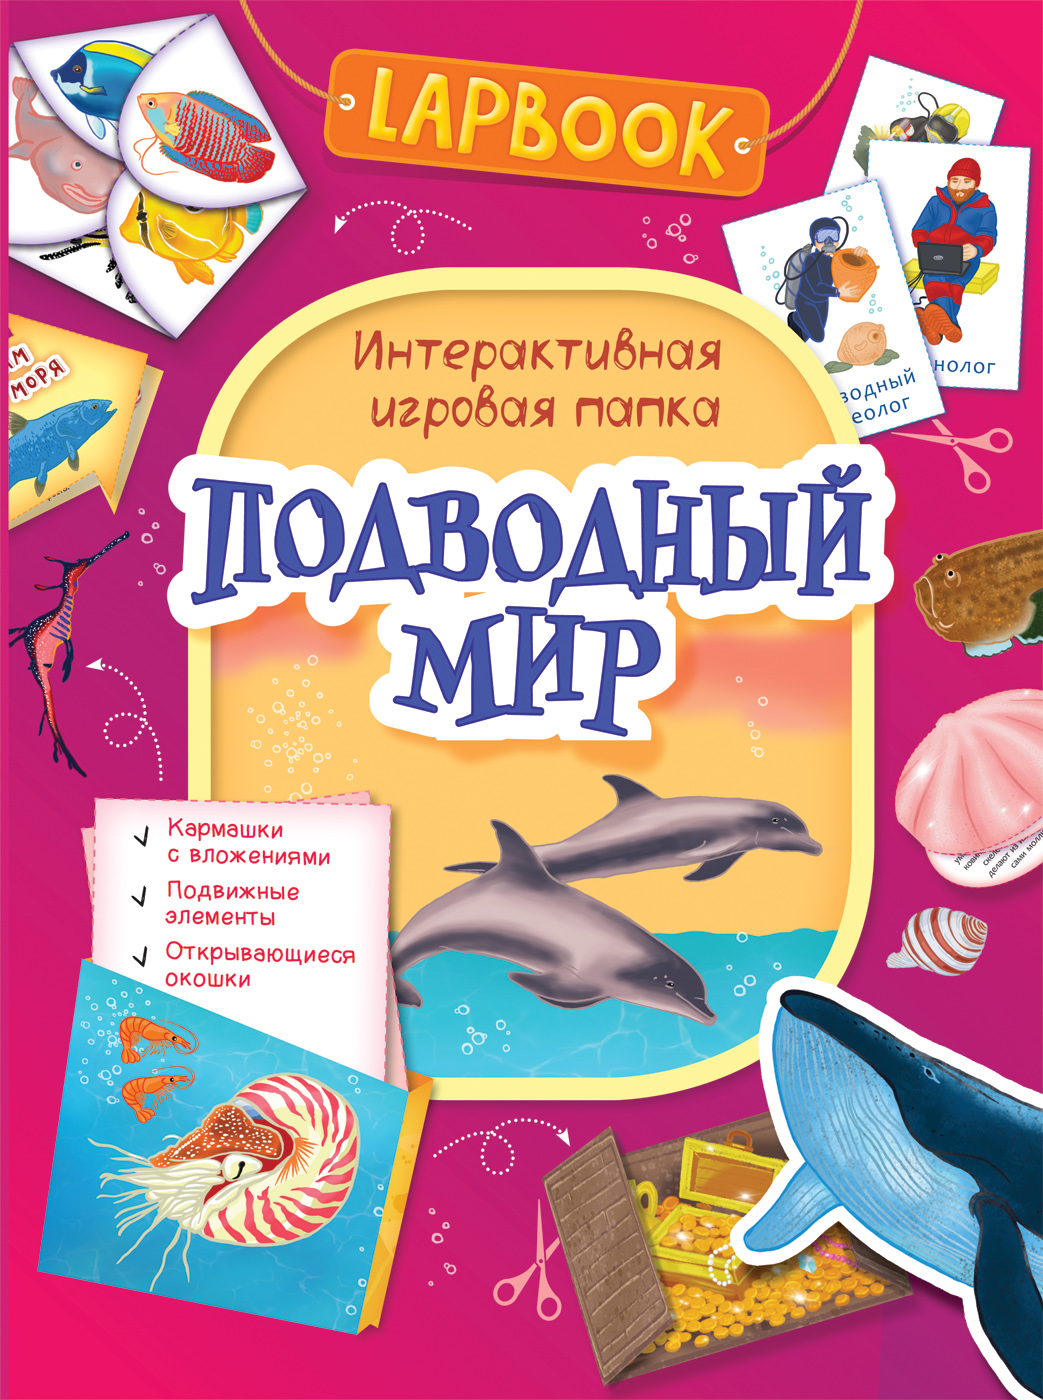 Lapbook. Подводный мир. Интерактивная игровая папка (Котятова Н.И.)